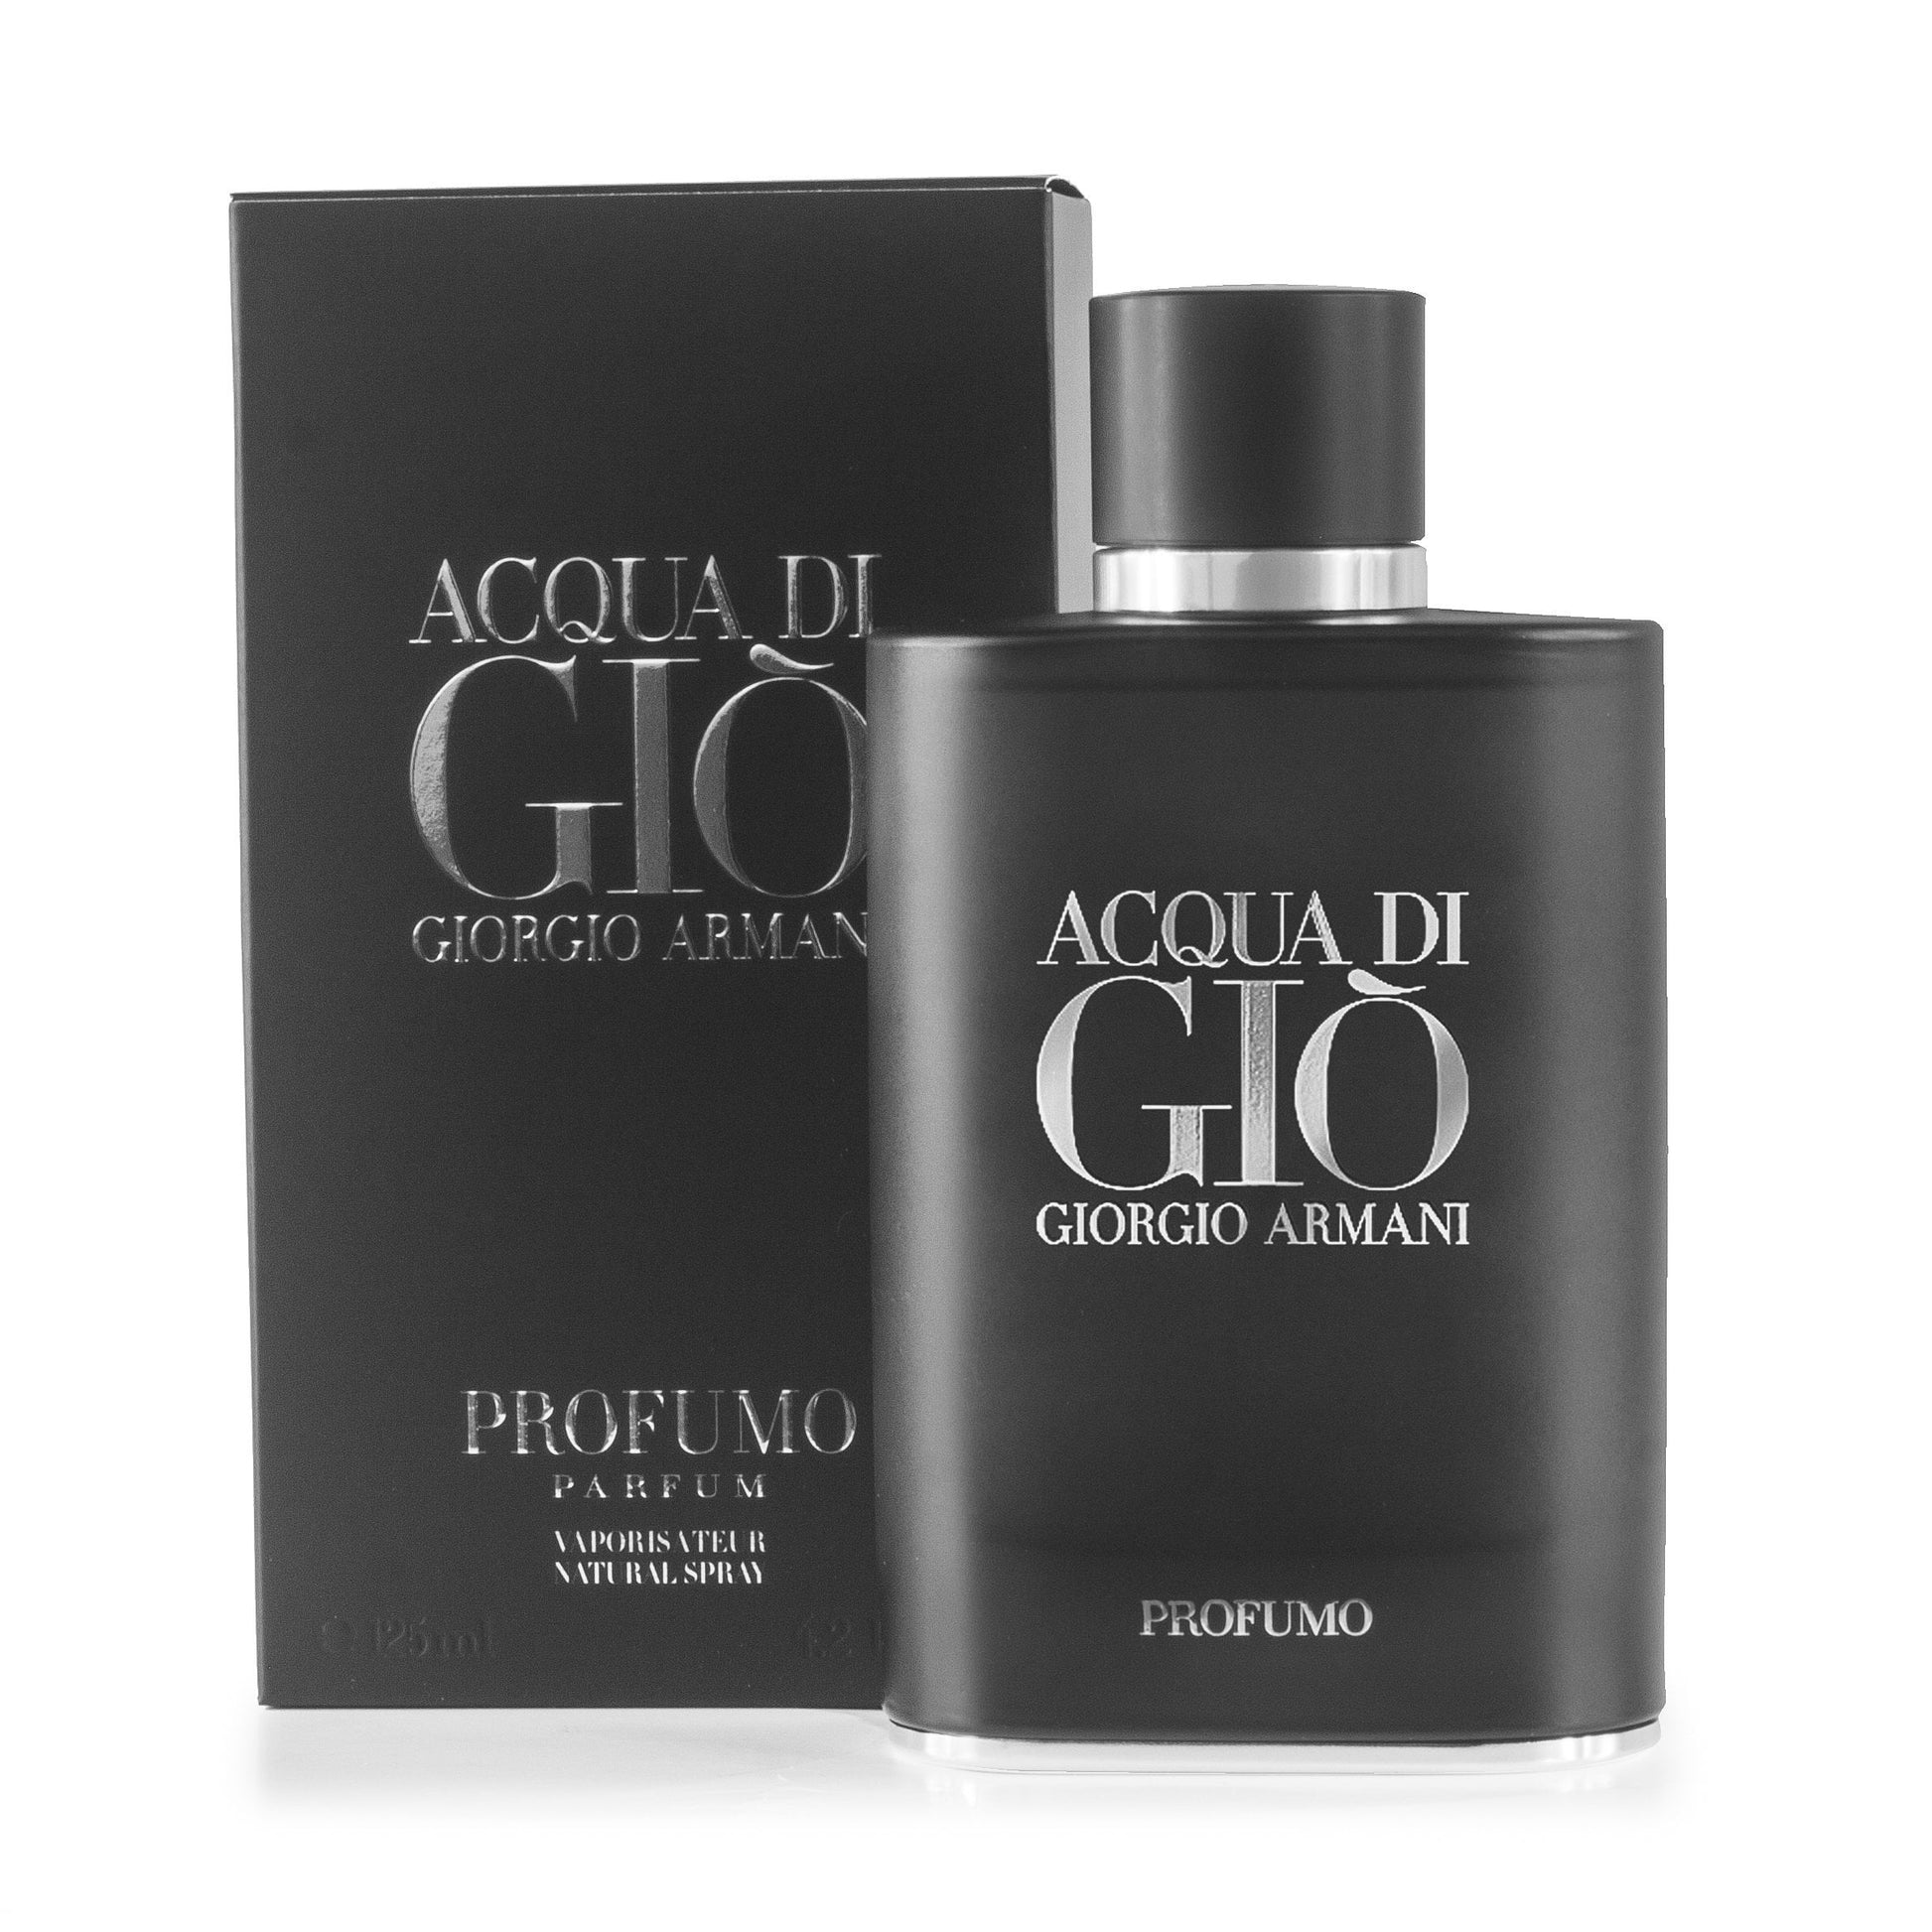 Acqua Di Gio Profumo Eau de Parfum Spray for Men by Giorgio Armani 4.2 oz. Click to open in modal